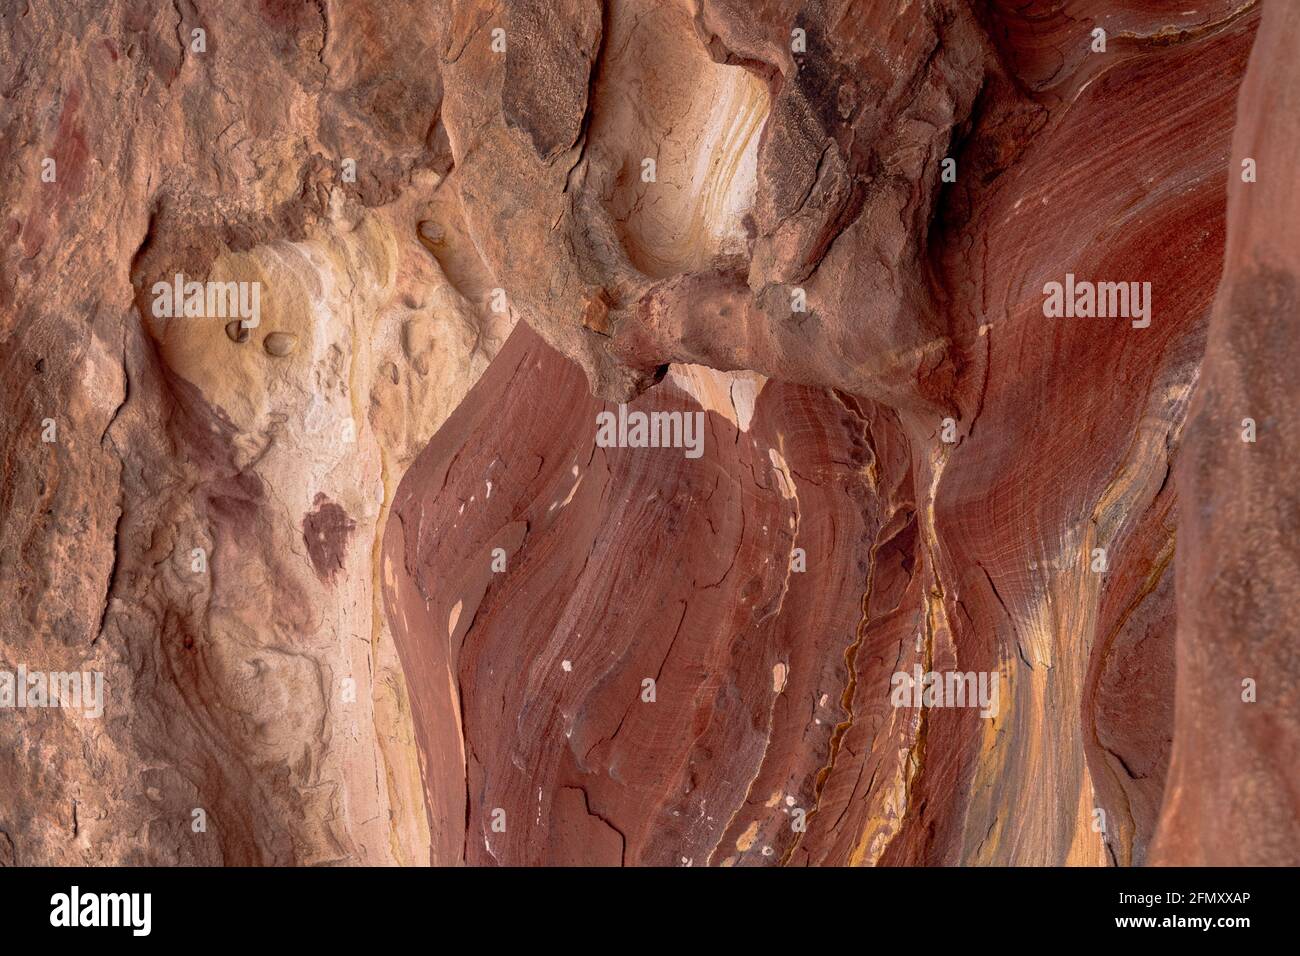 Arenisca roja-rosada multicolor con signos de desgaste y erosión, patrones y texturas de formación de rocas creadas por óxidos de hierro y manganeso Foto de stock